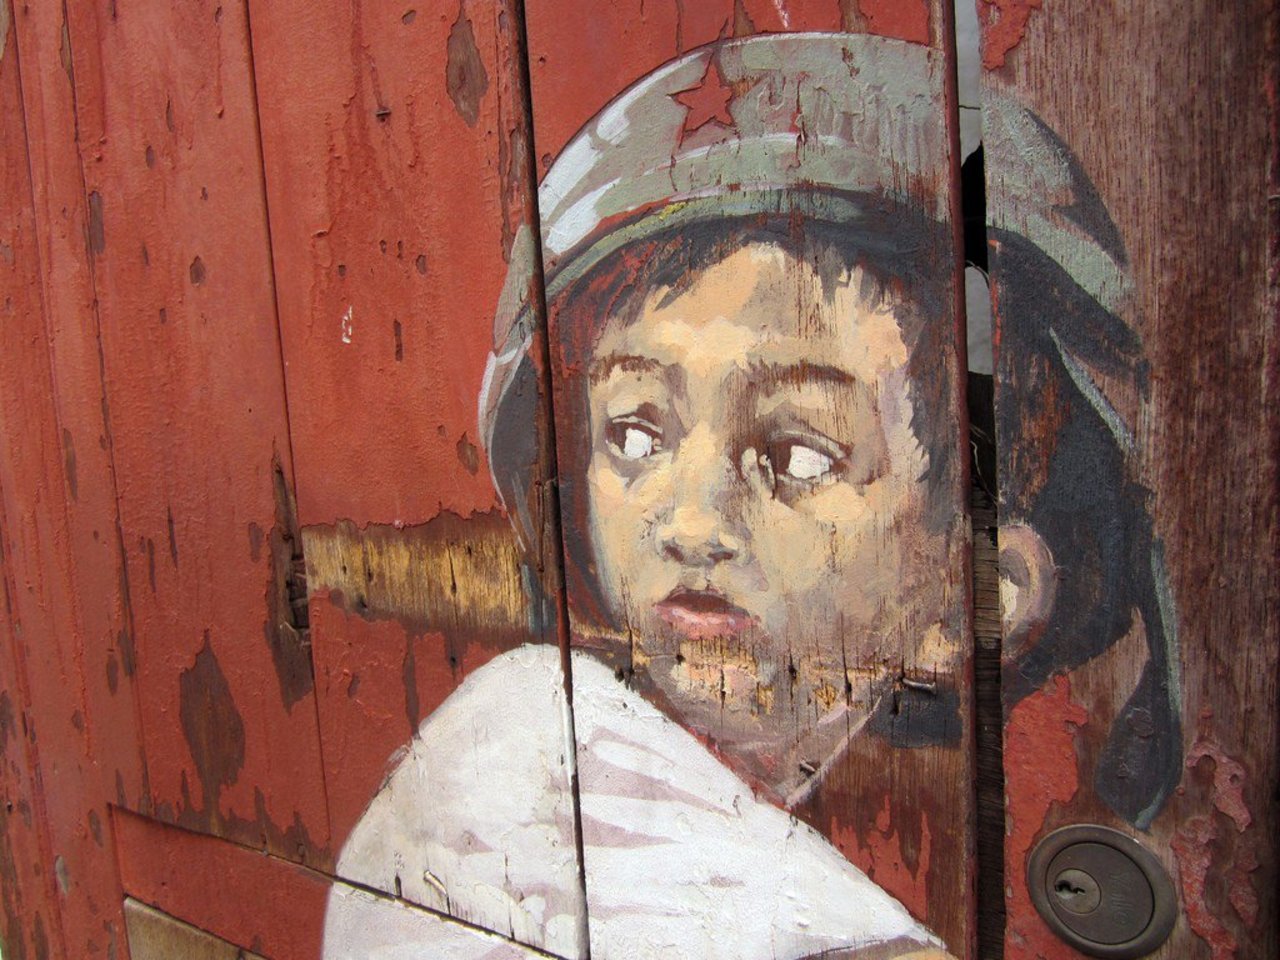 War Child    •    #streetart #graffiti #NoMoreWar #art . : https://t.co/GkY9gM7srG